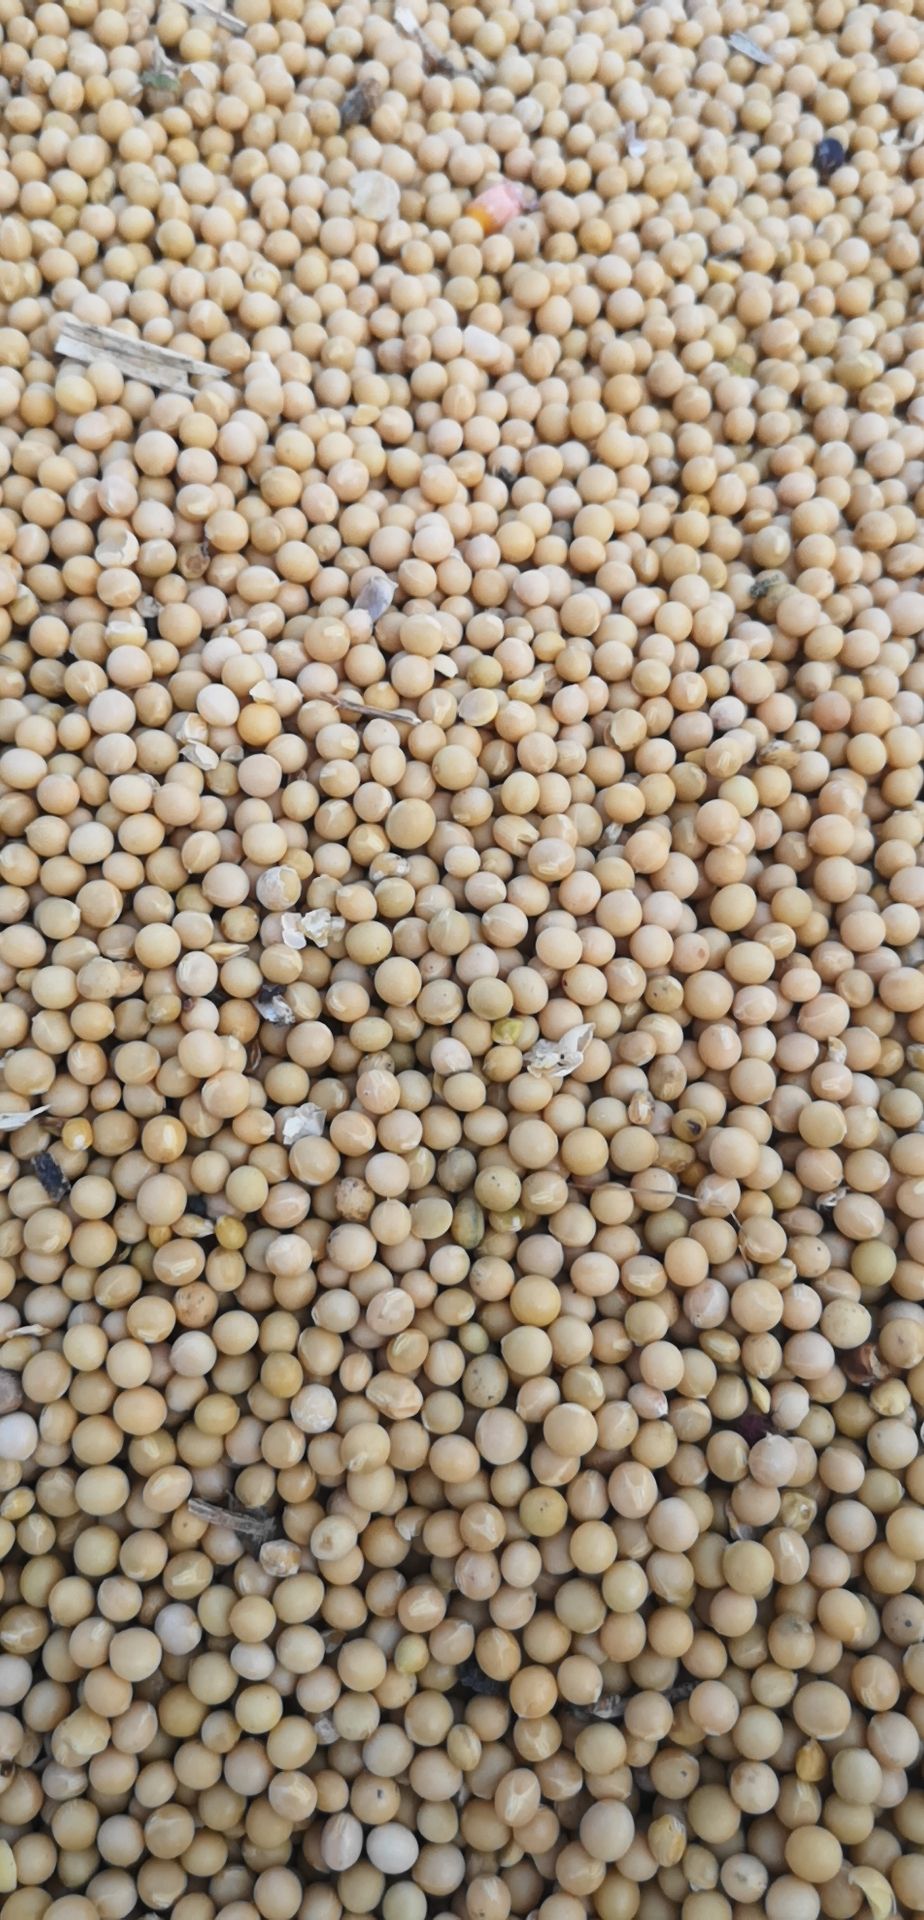 林甸县黄芽豆 70多户农民种的芽豆。